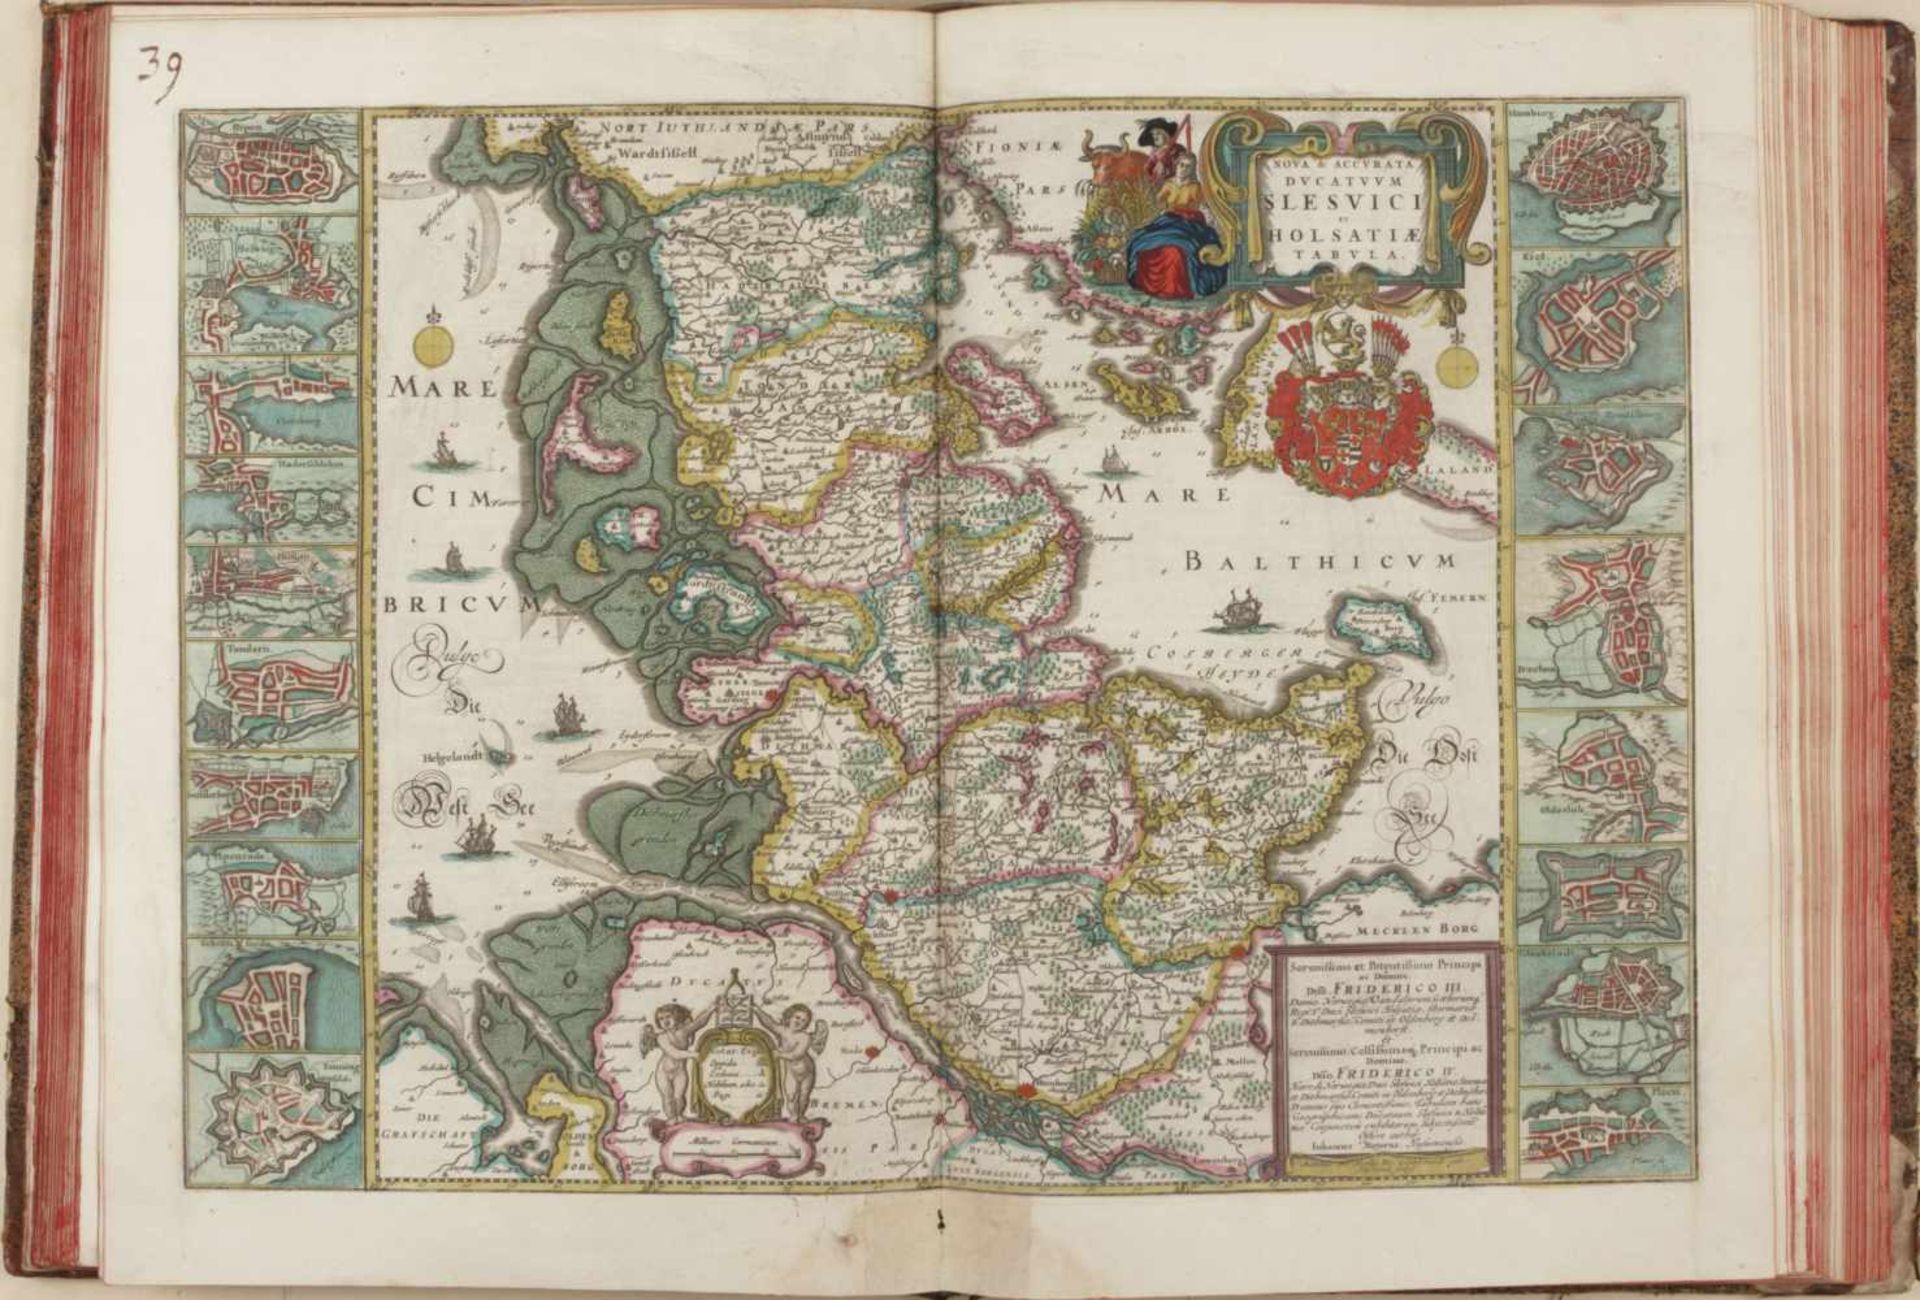 Blaeu, Ioan.Atlas Mayor o Geographia Blaviana (Tl. 3) quecontiene las cartas y descripciones de